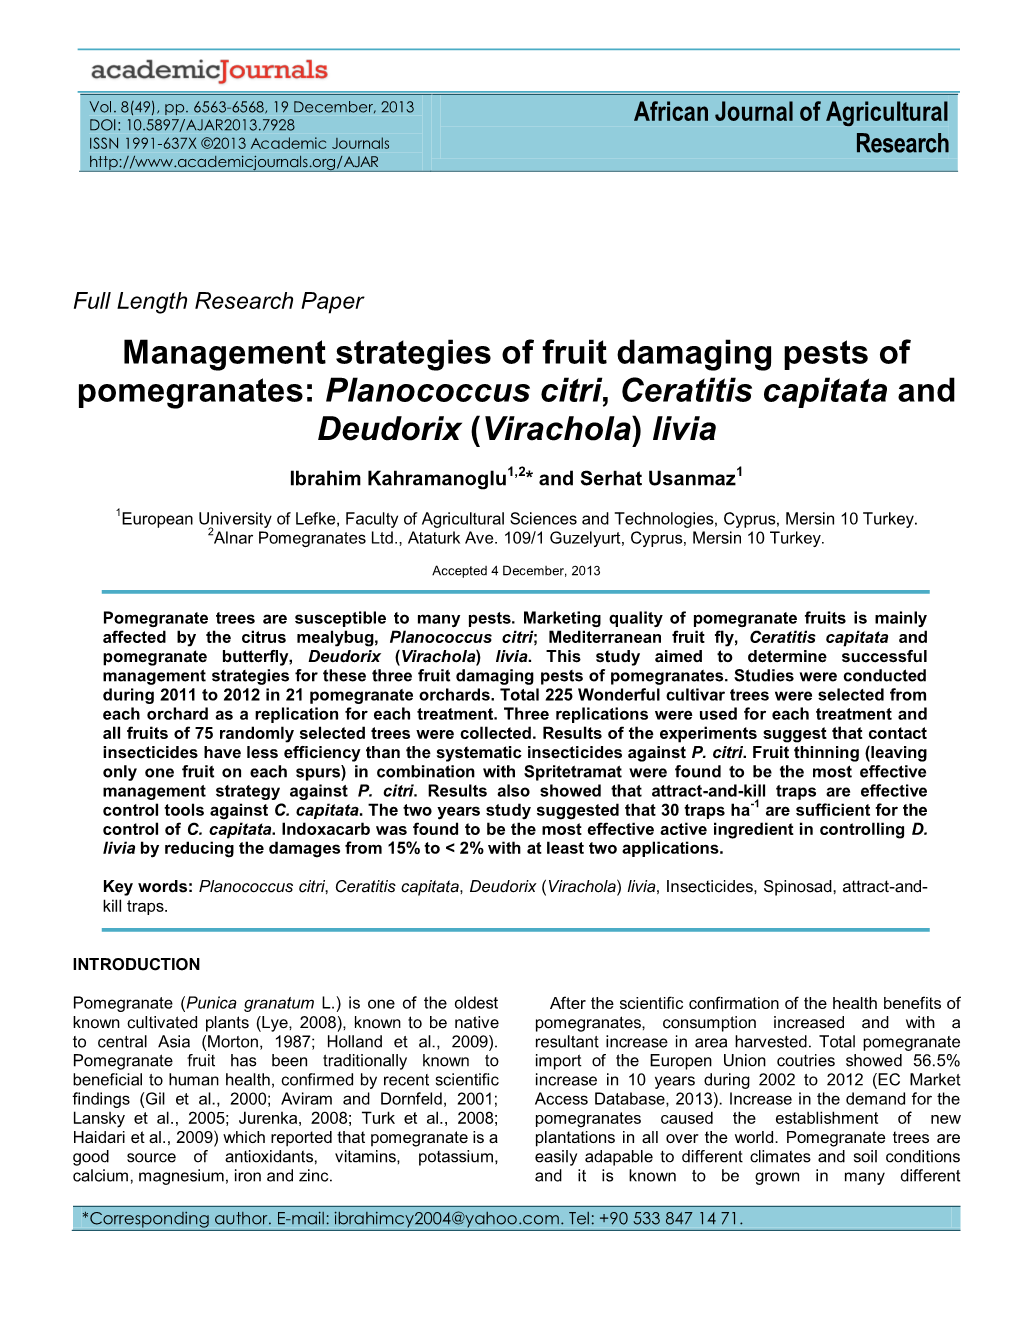 Management Strategies of Fruit Damaging Pests of Pomegranates: Planococcus Citri, Ceratitis Capitata and Deudorix (Virachola) Livia